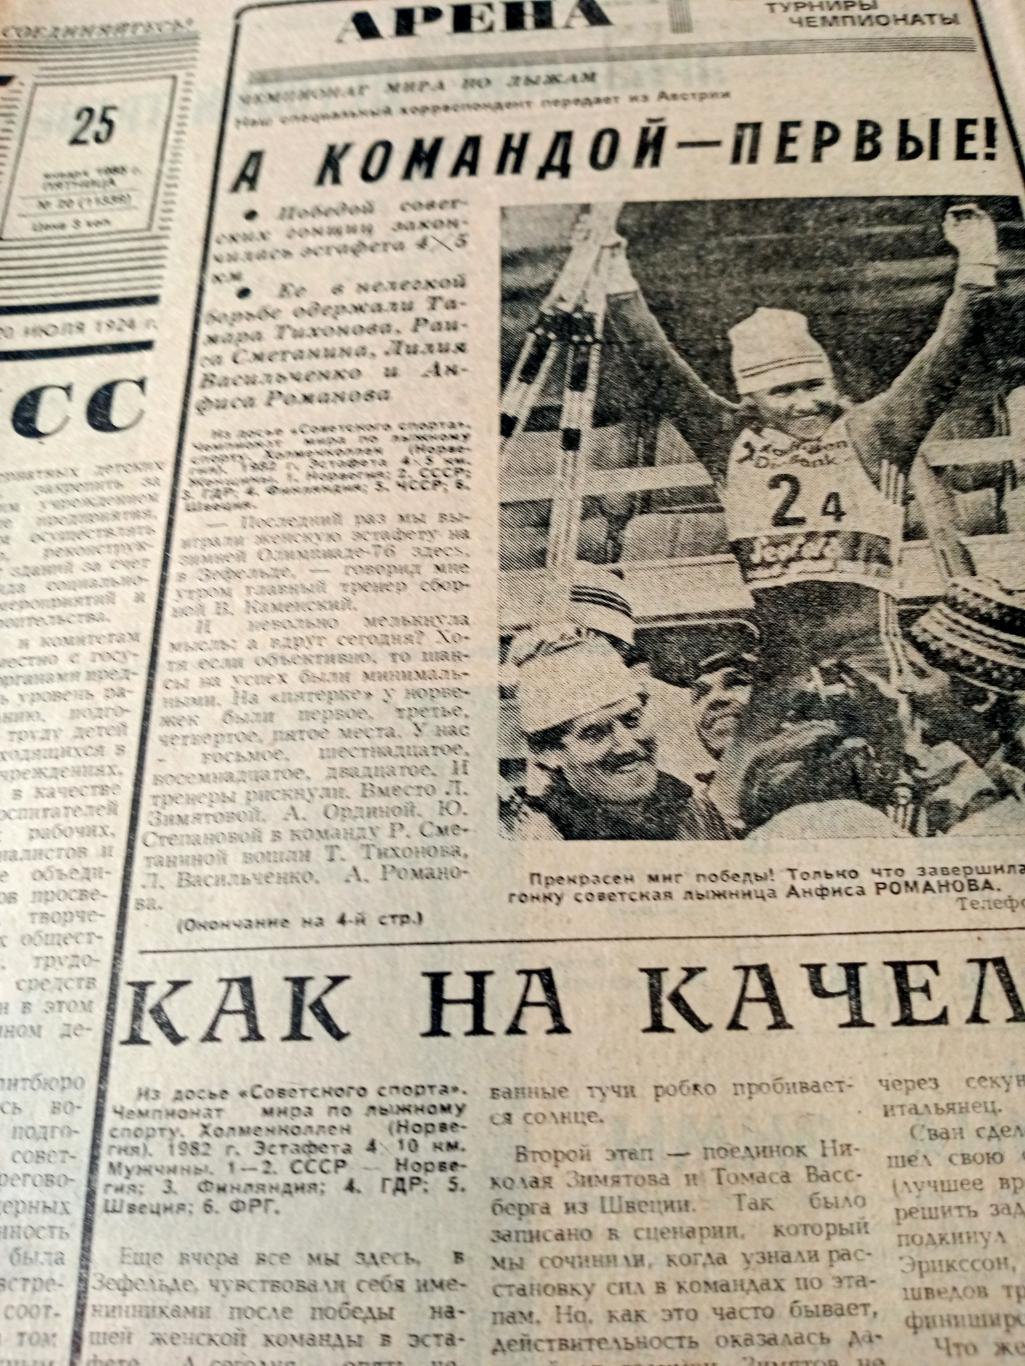 А командой - первые! Советский спорт. 1985 год. 25 января